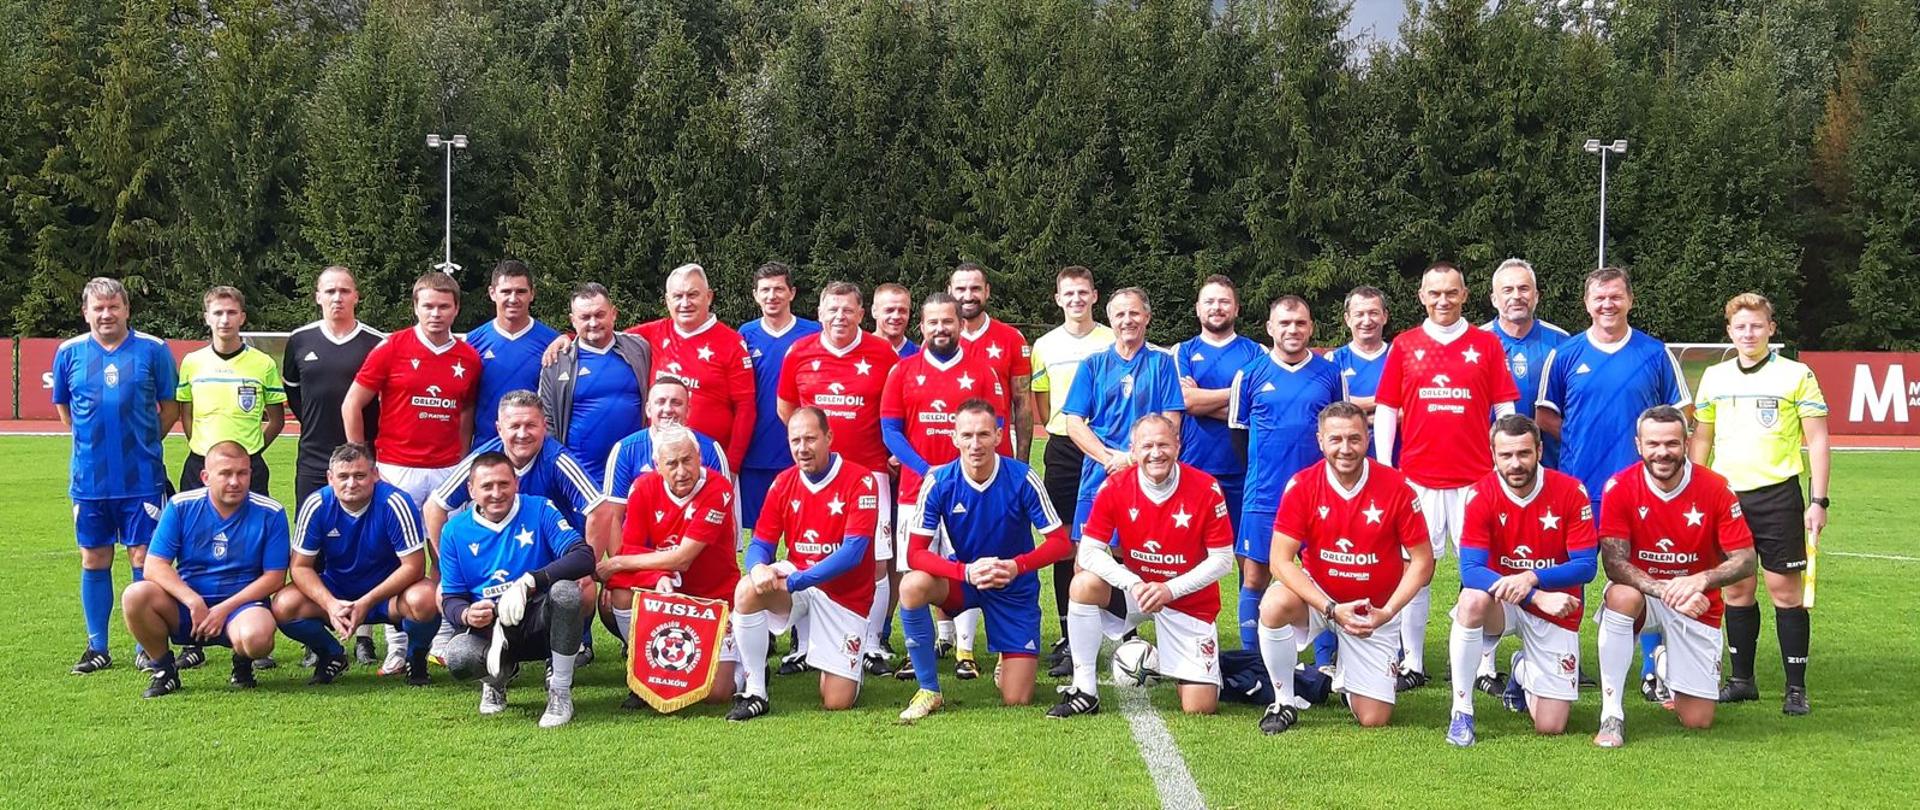 Zdjęcie grupowe zawodników Wisły Kraków i Kalwarianki, wykonane na murawie stadionu. 